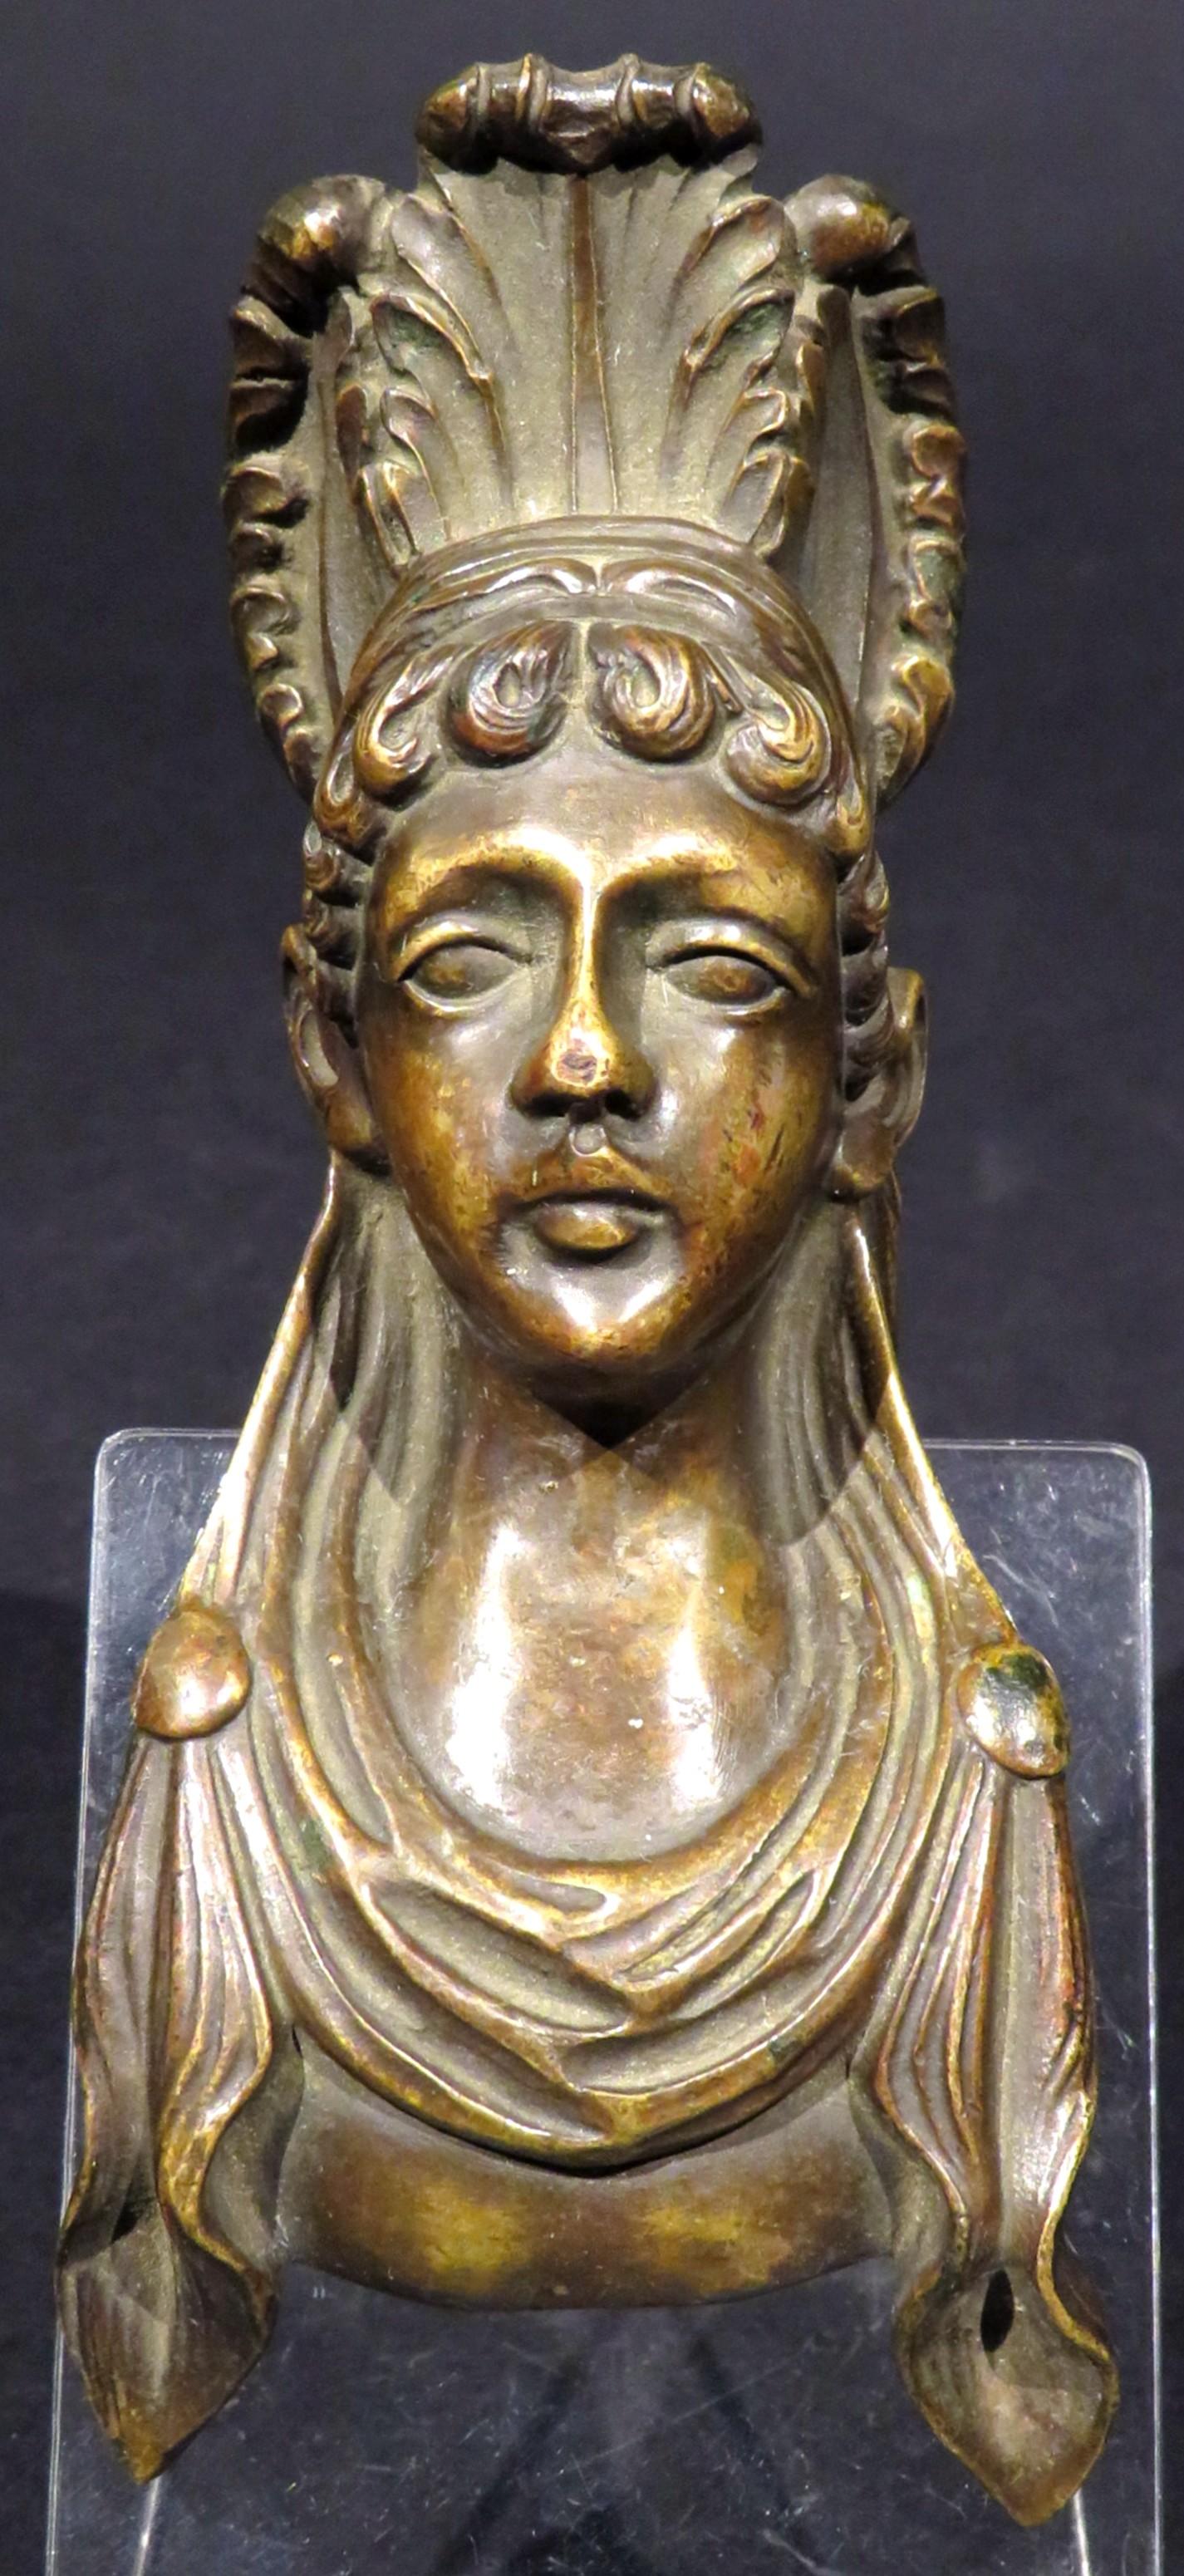 Ein sehr attraktiver Möbelbeschlag aus Bronze der ägyptischen Wiedergeburt des 19. Jahrhunderts, gegossen in Form der Büste einer Göttin, die ein mit Quasten besetztes Gewand trägt und mit einem gefiederten Kopfschmuck mit fein ziselierten Details